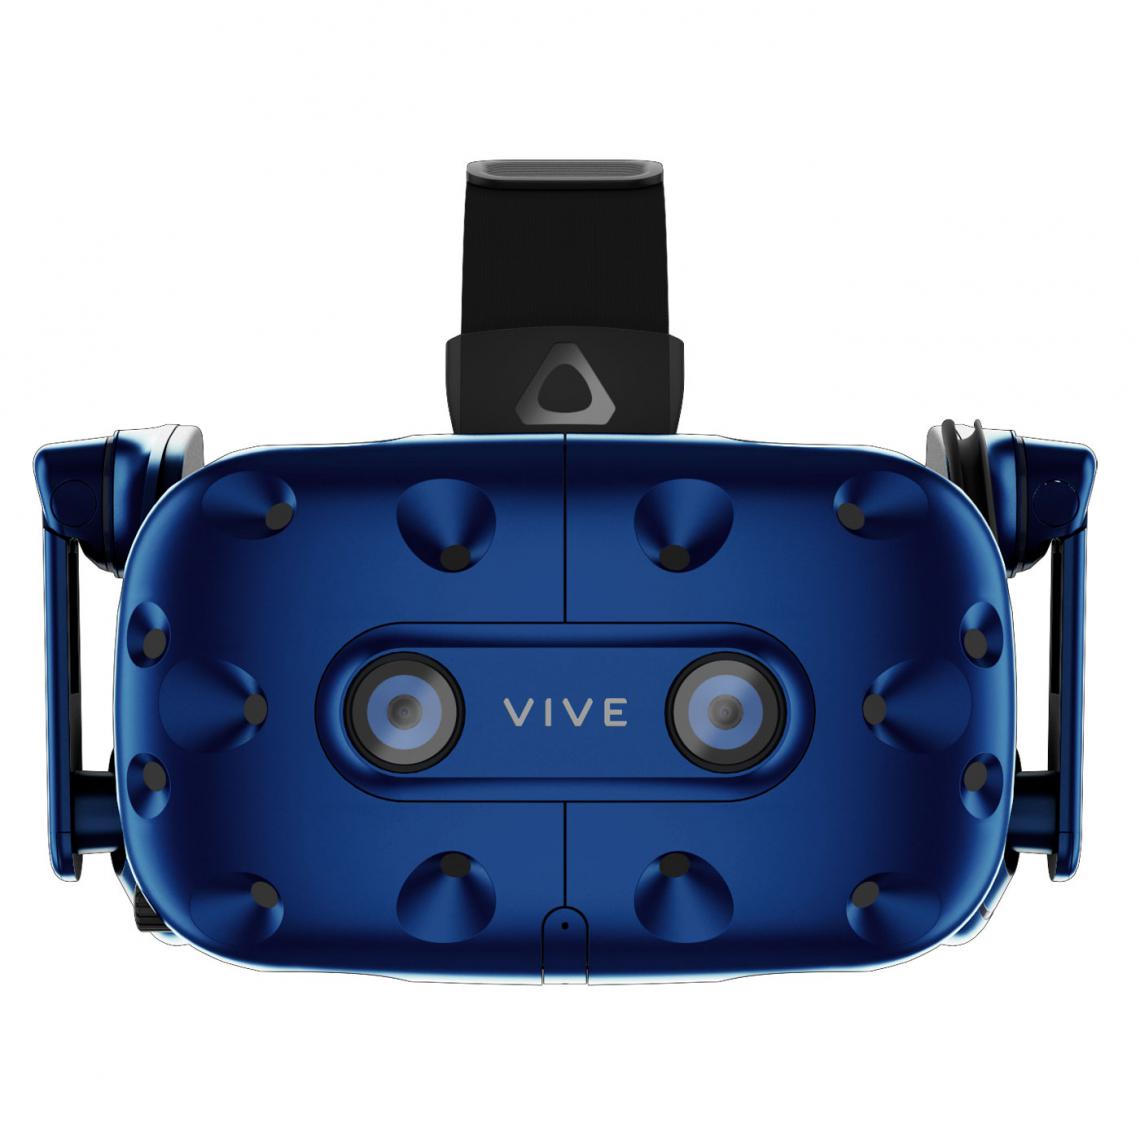 HTC - Vive Pro Complete Edition - Casques de réalité virtuelle